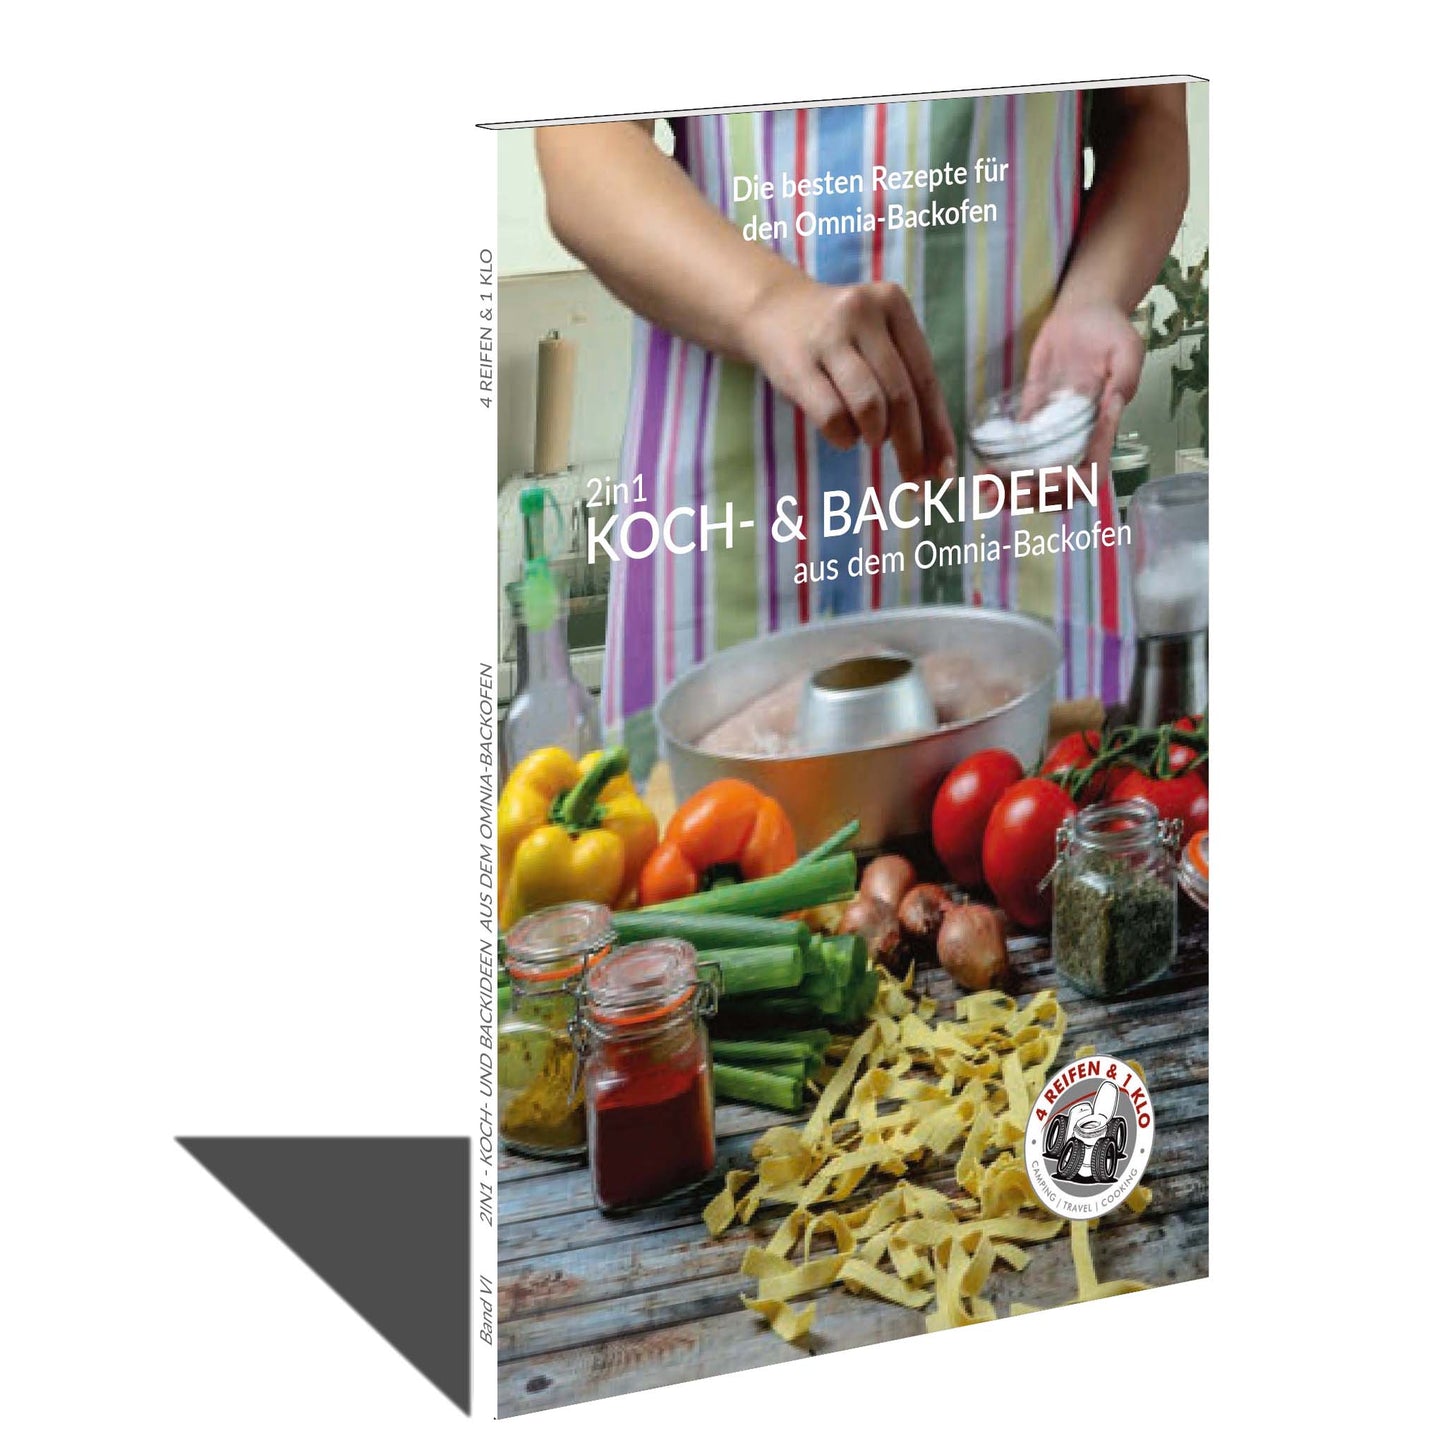 Das Umkehrbuch für den Omnia Backofen mit Koch- und Backrezepten